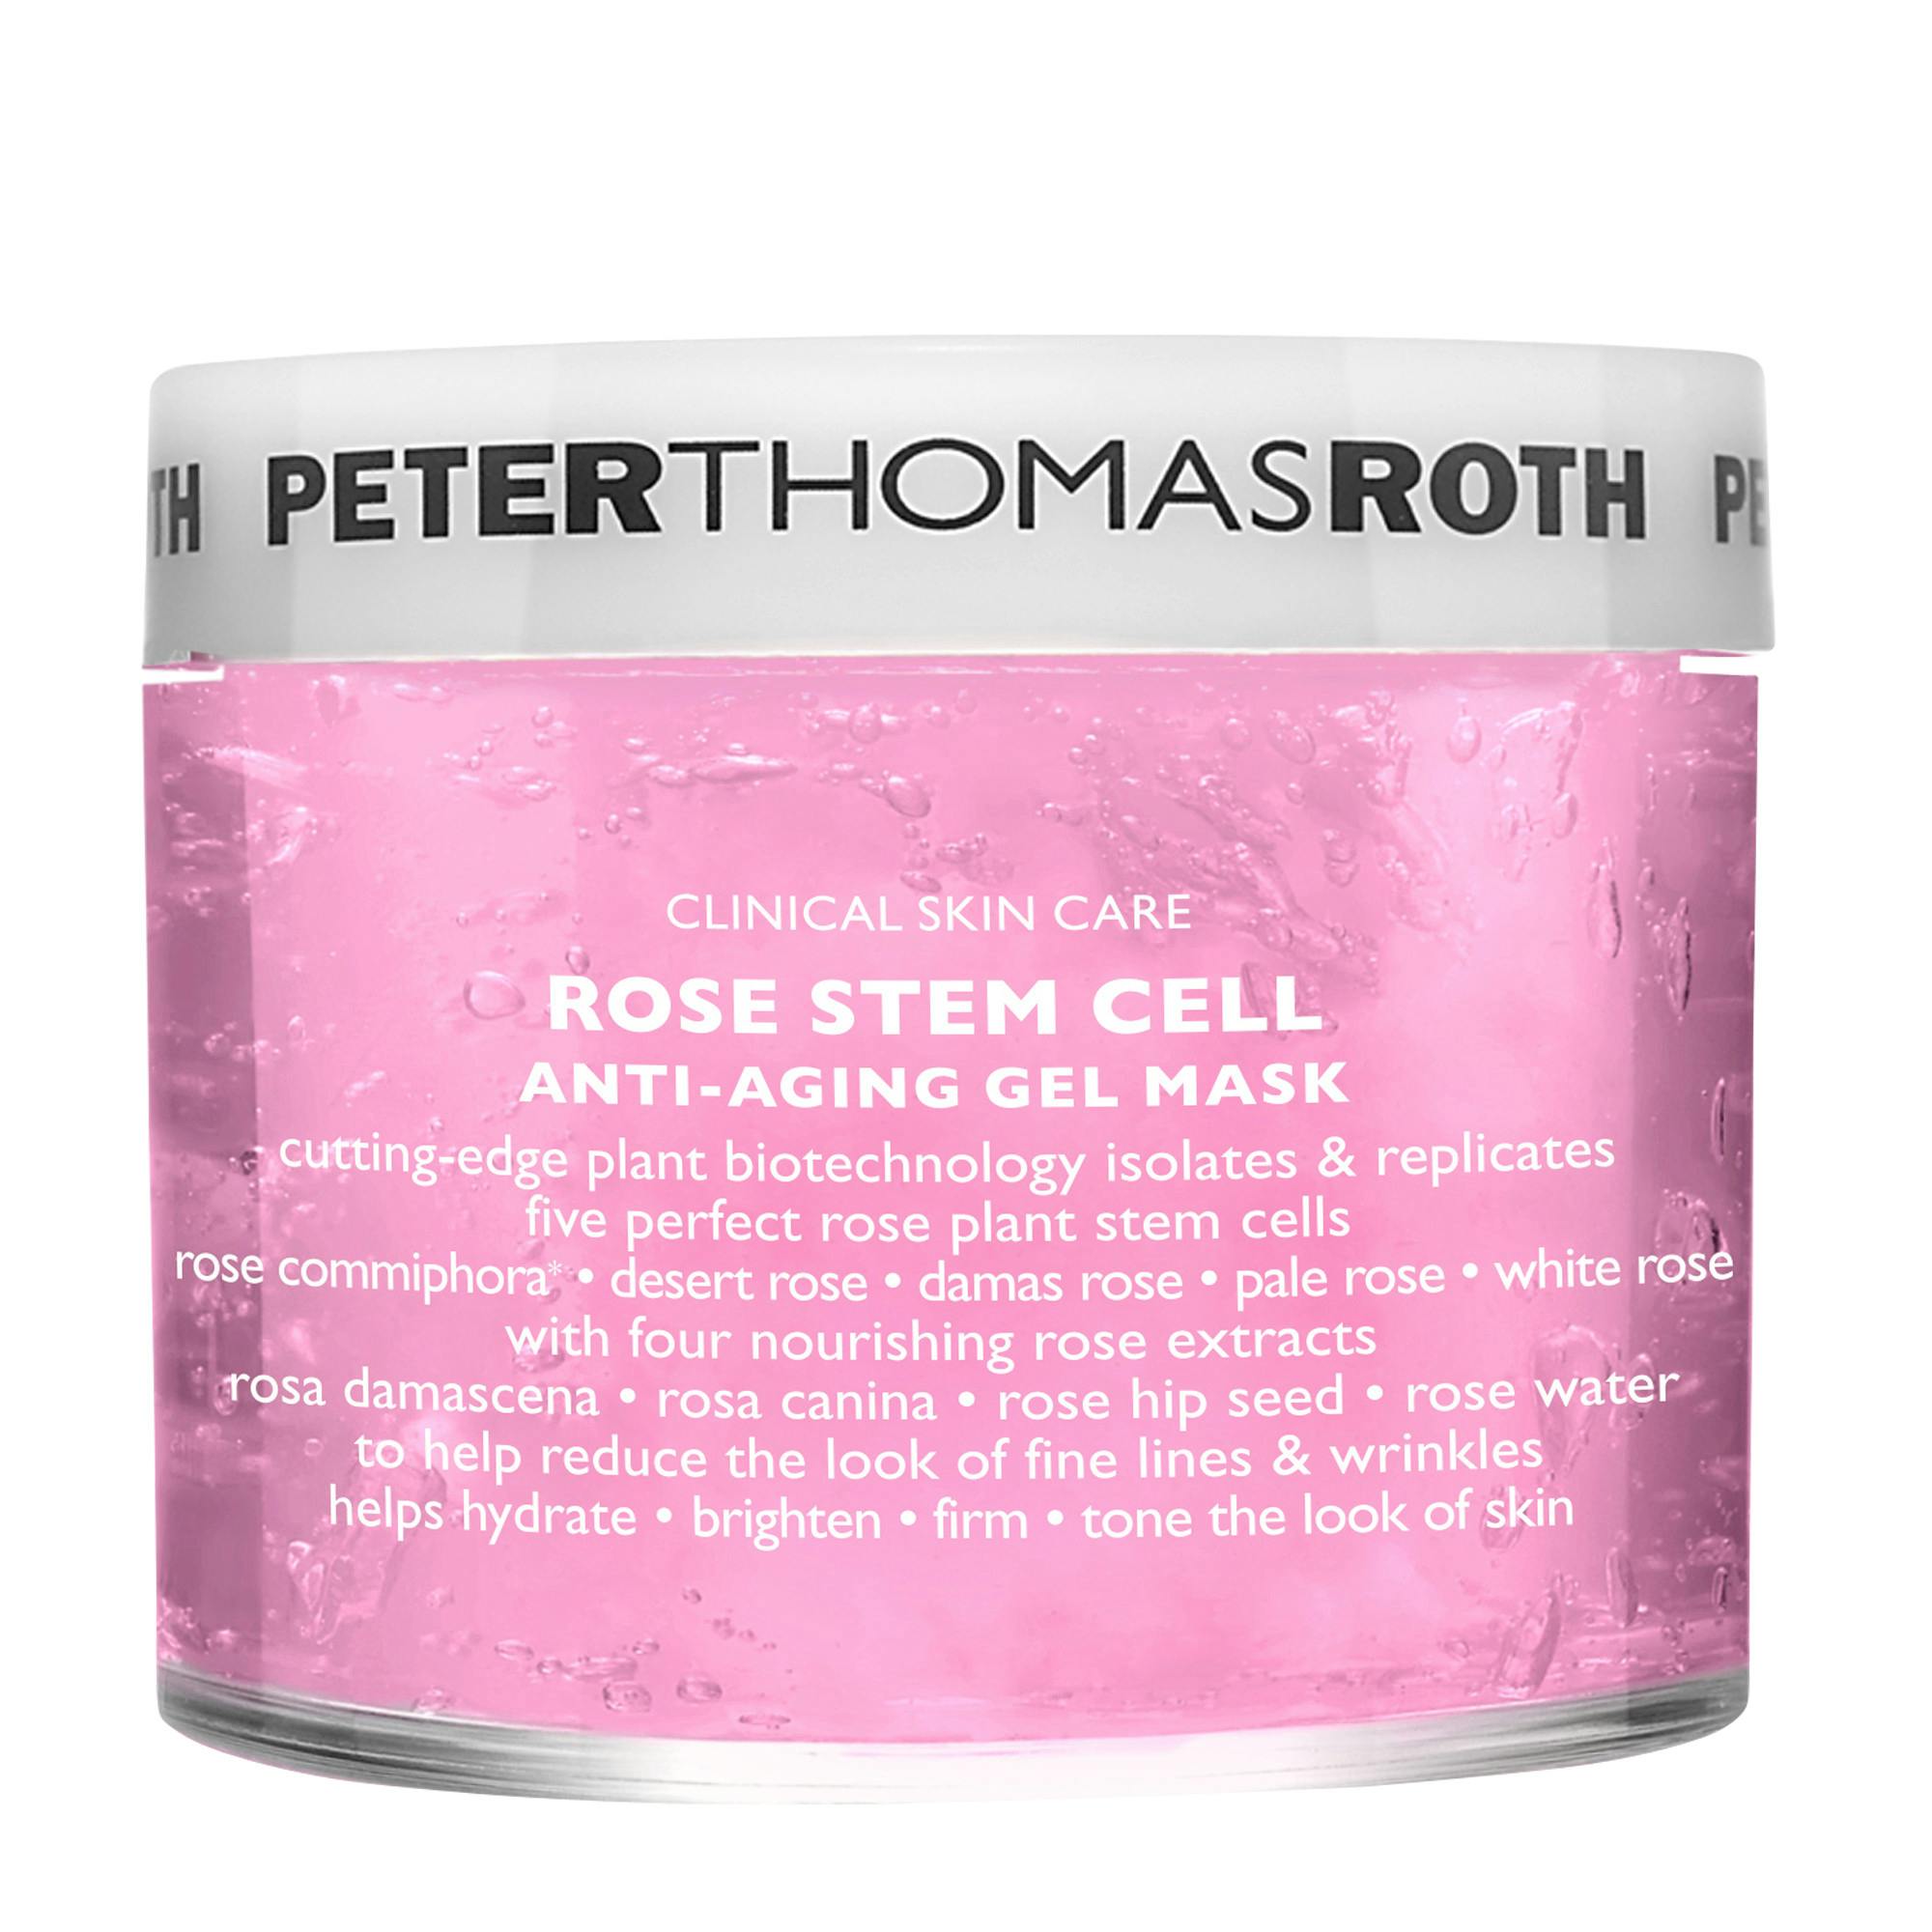 Peter Thomas Roth -Rose Stem Cell Anti-Aging Gel Mask